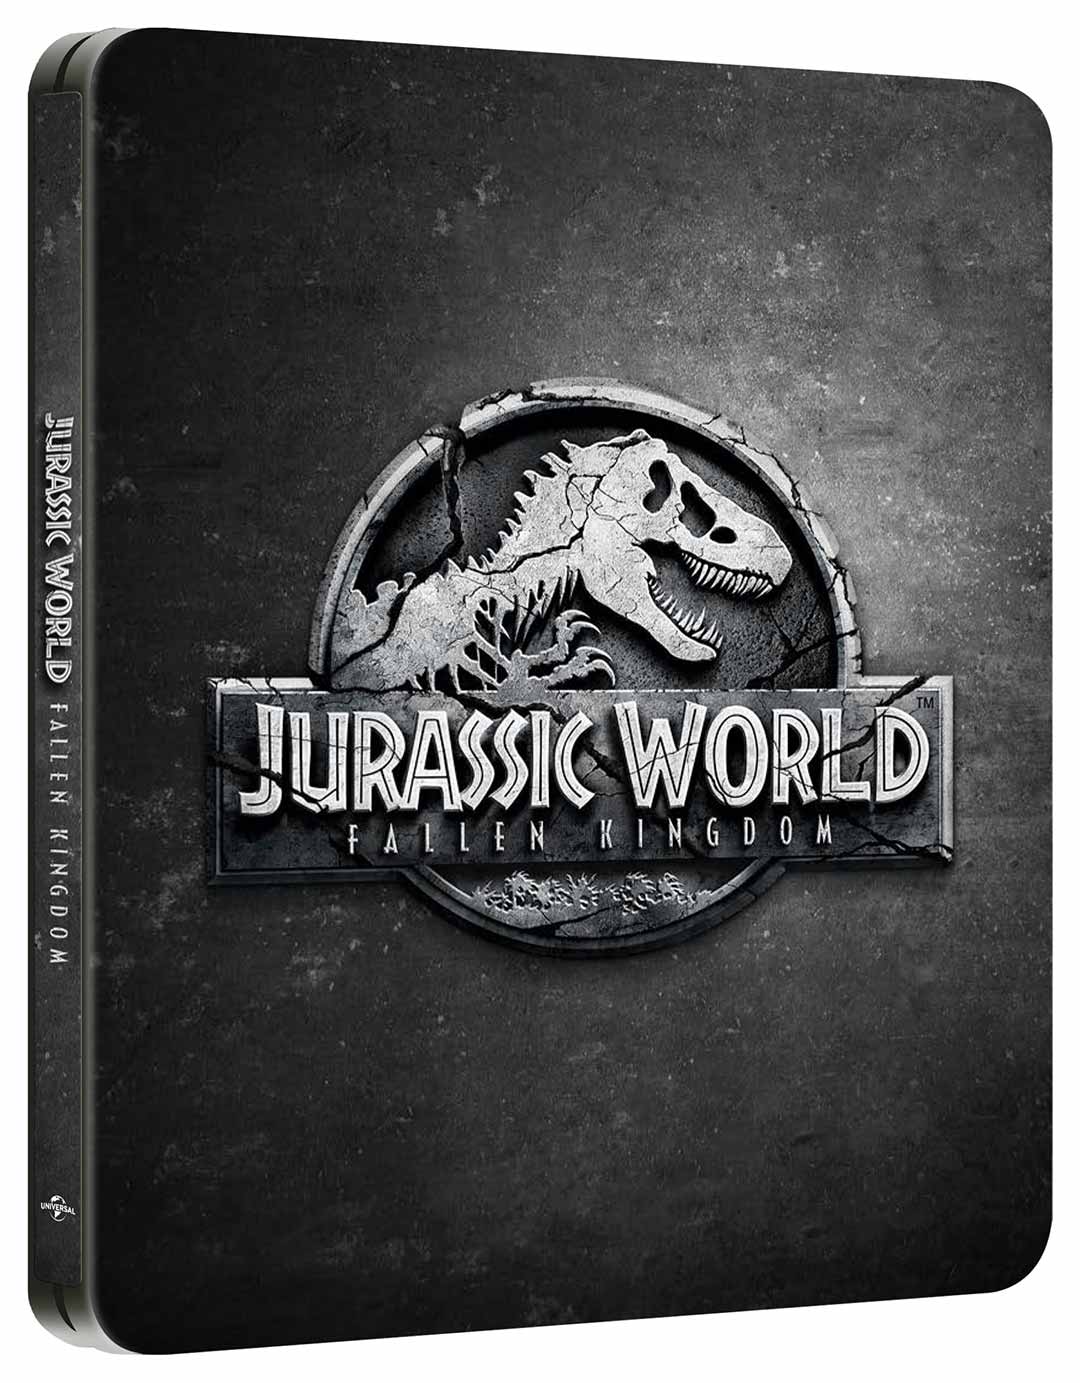 Jurassic World - Il Regno Distrutto - Steelbook Limited Edition 4K Ultra HD + Blu-ray (Blu-ray) Image 2